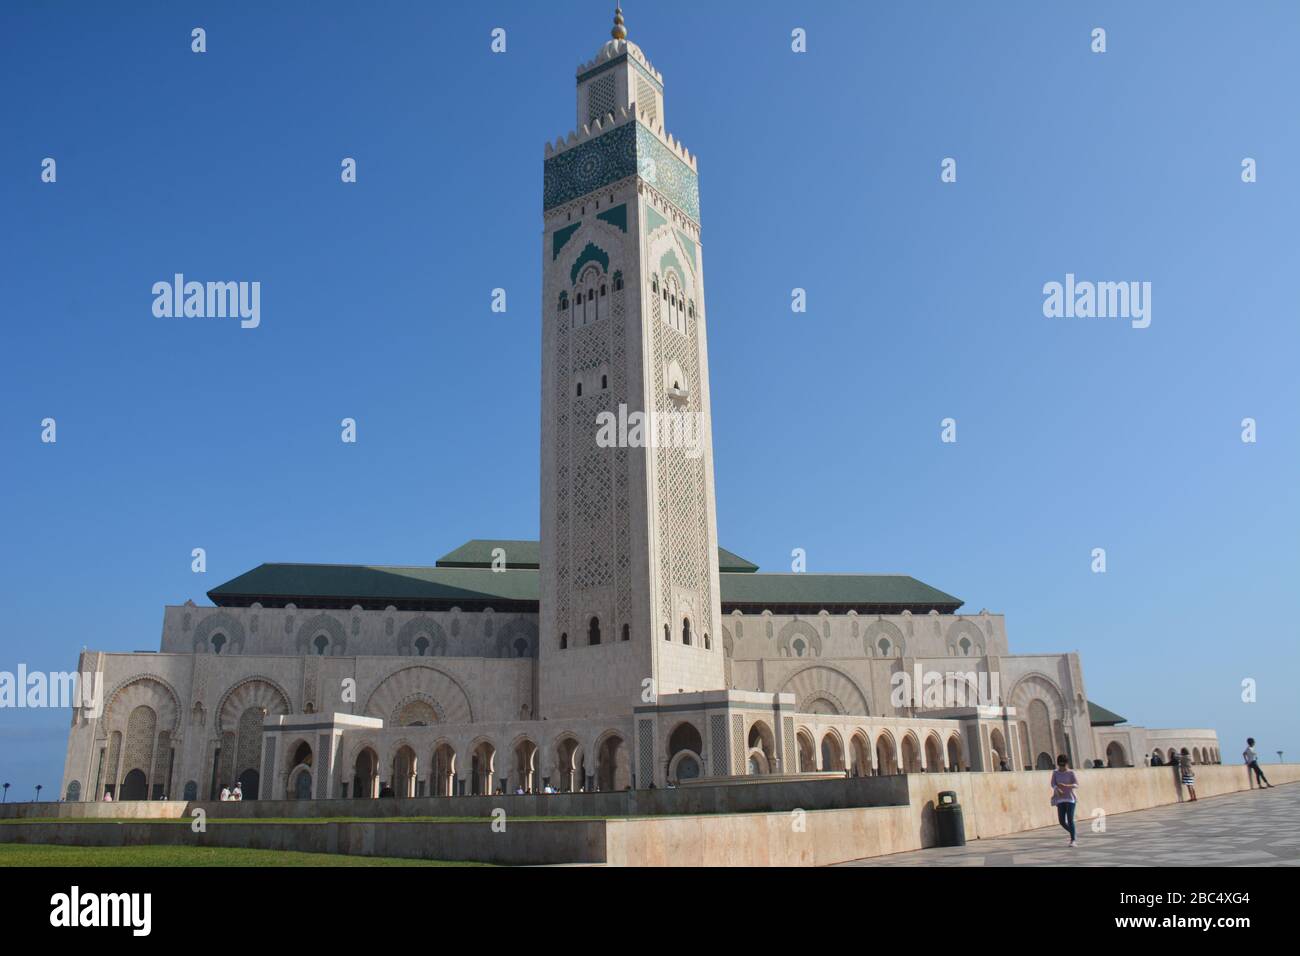 Drammatico scatto esterno della Moschea di Hassan II, Casablanca, Marocco, che mostra le enormi dimensioni dell'edificio rispetto alla gente. Foto Stock